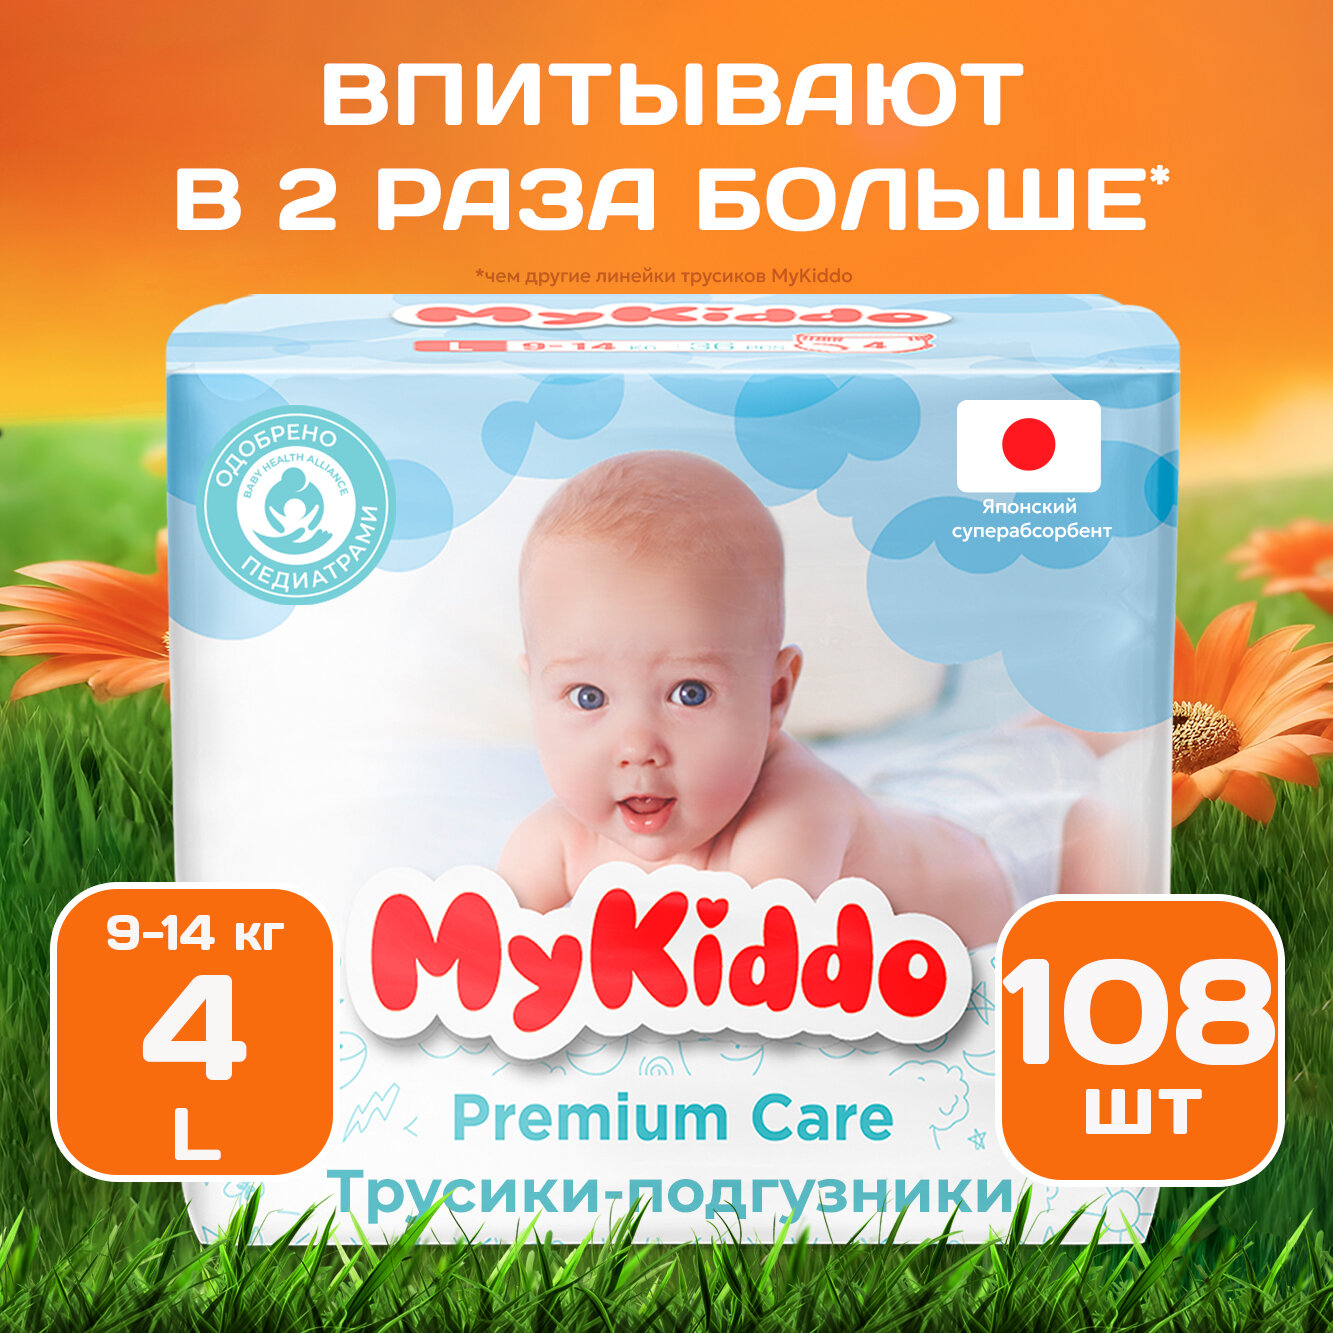 Майкиддо Подгузники трусики MyKiddo Premium размер 4 L, для детей весом 9-14 кг, 108 шт. (3 упаковки по 36 шт.) мегабокс